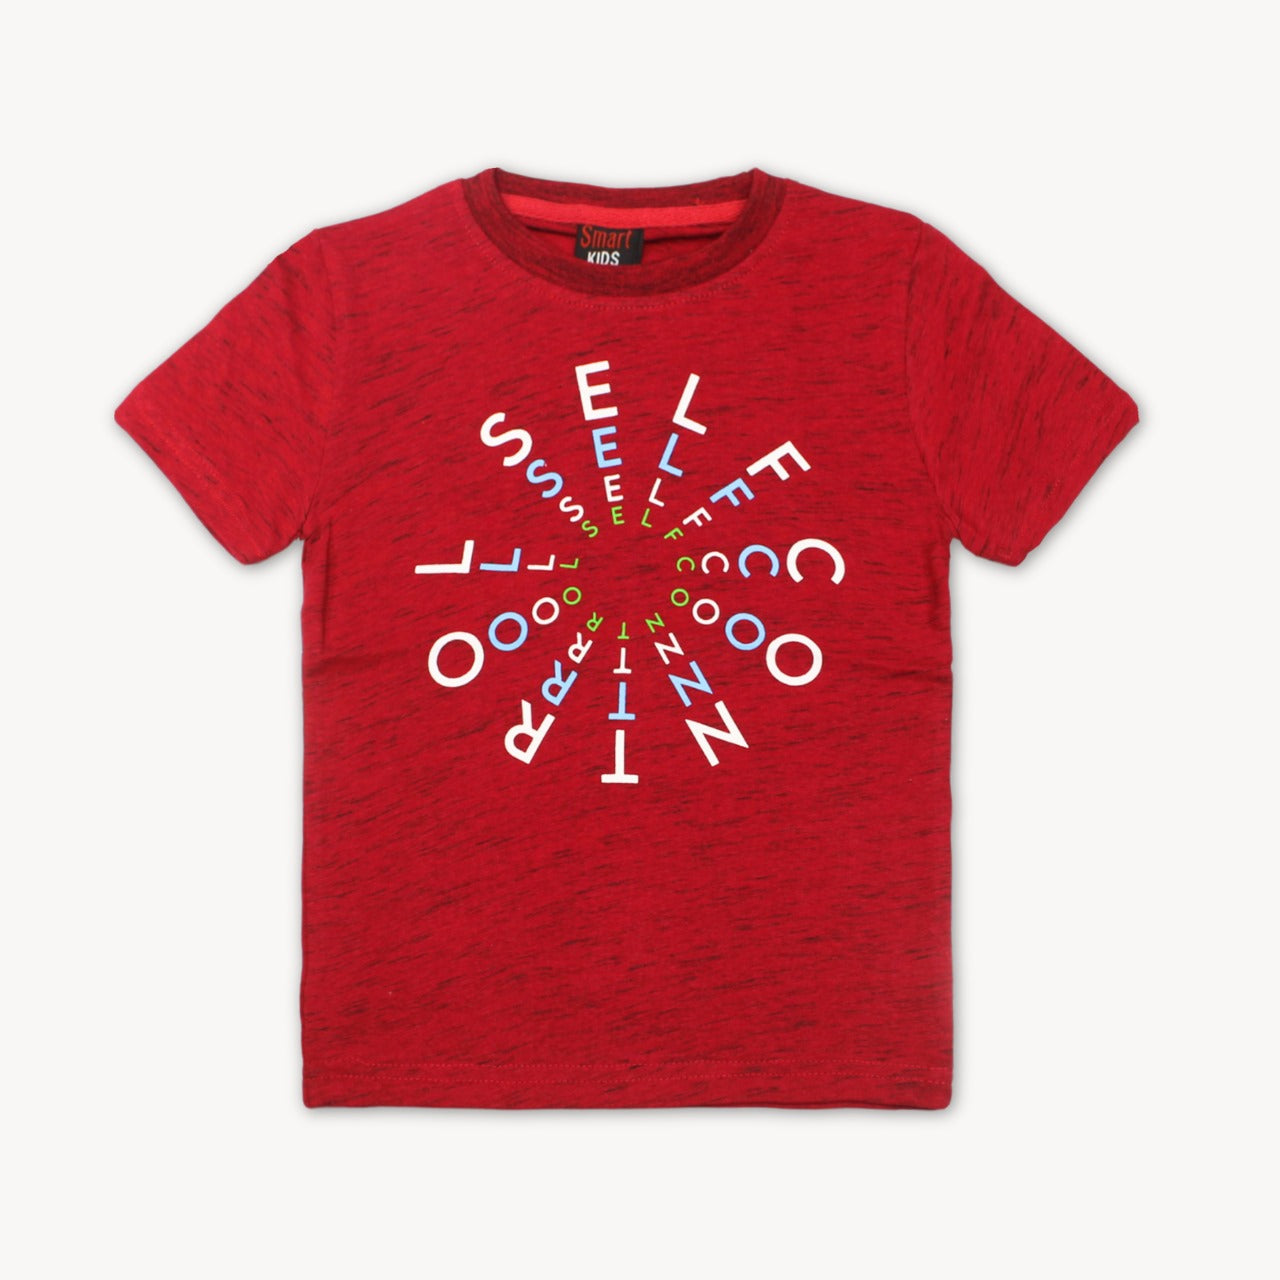 Maroon Slub Self Control Printed Cotton T-Shirt